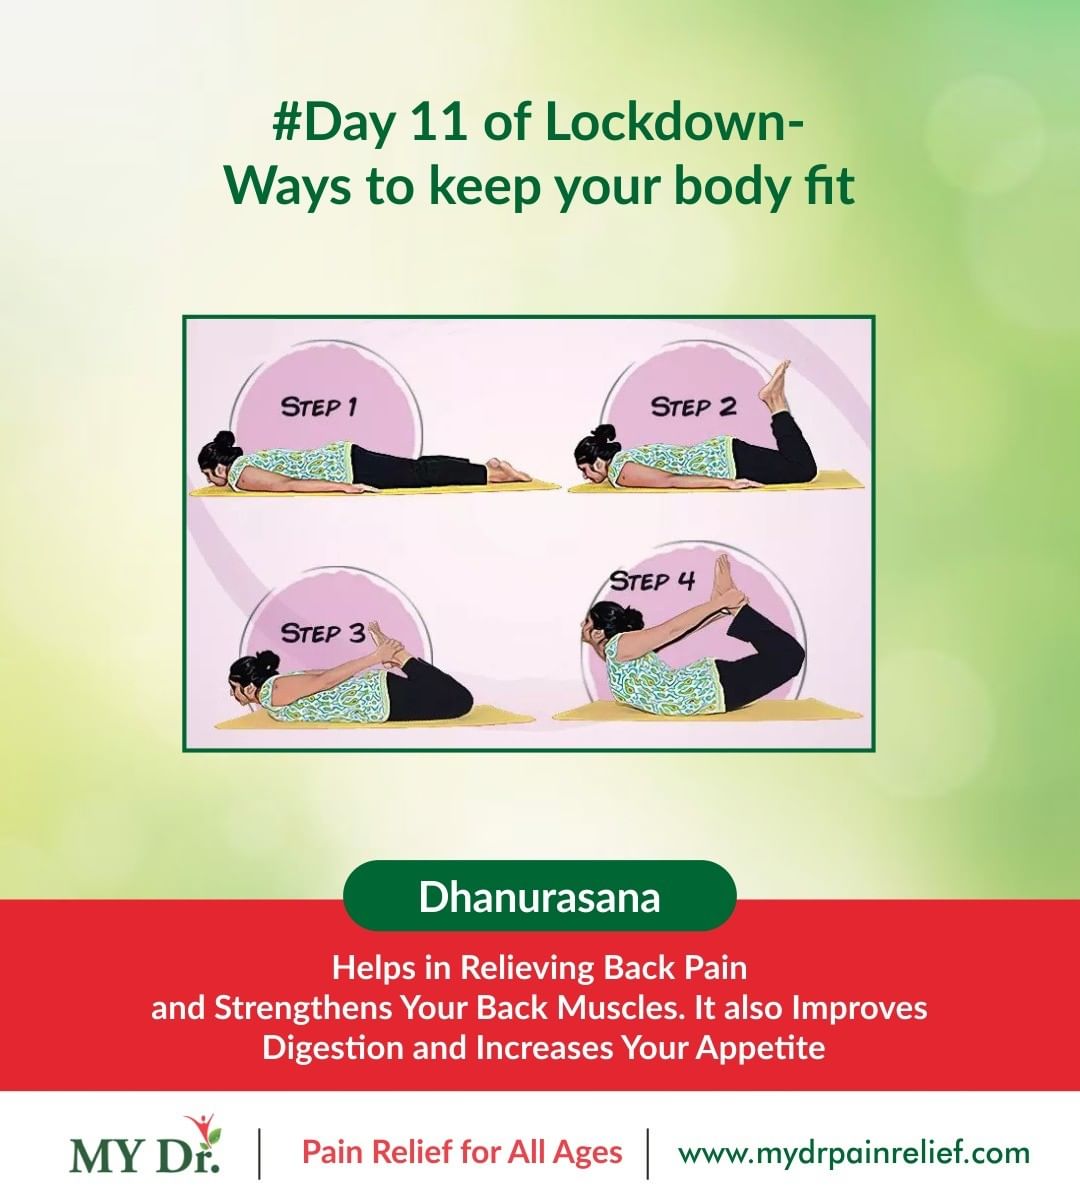 Dhanurasana (yoga) for back pain